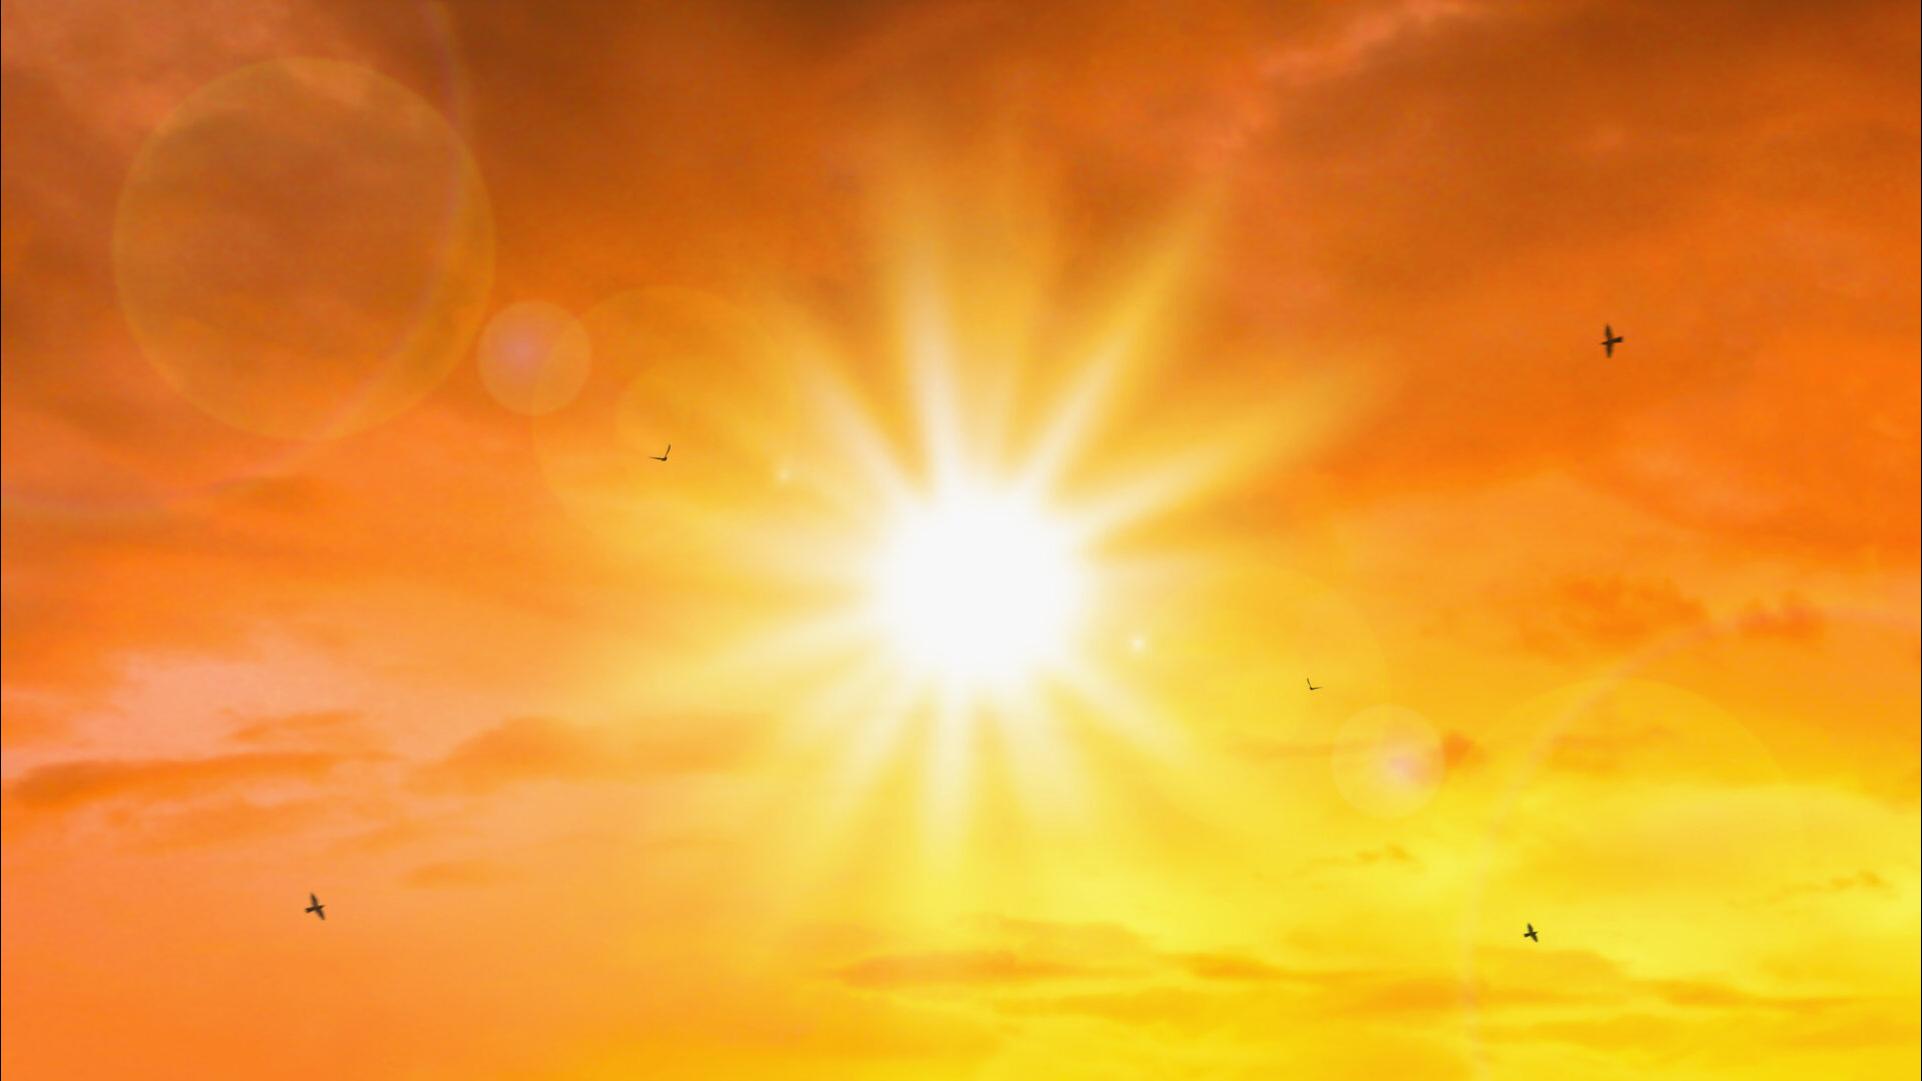 تحذيرات من التعرض لأشعة الشمس ونشوب حرائق بالمناطق الحراجية خلال الموجة الحارة الحالية